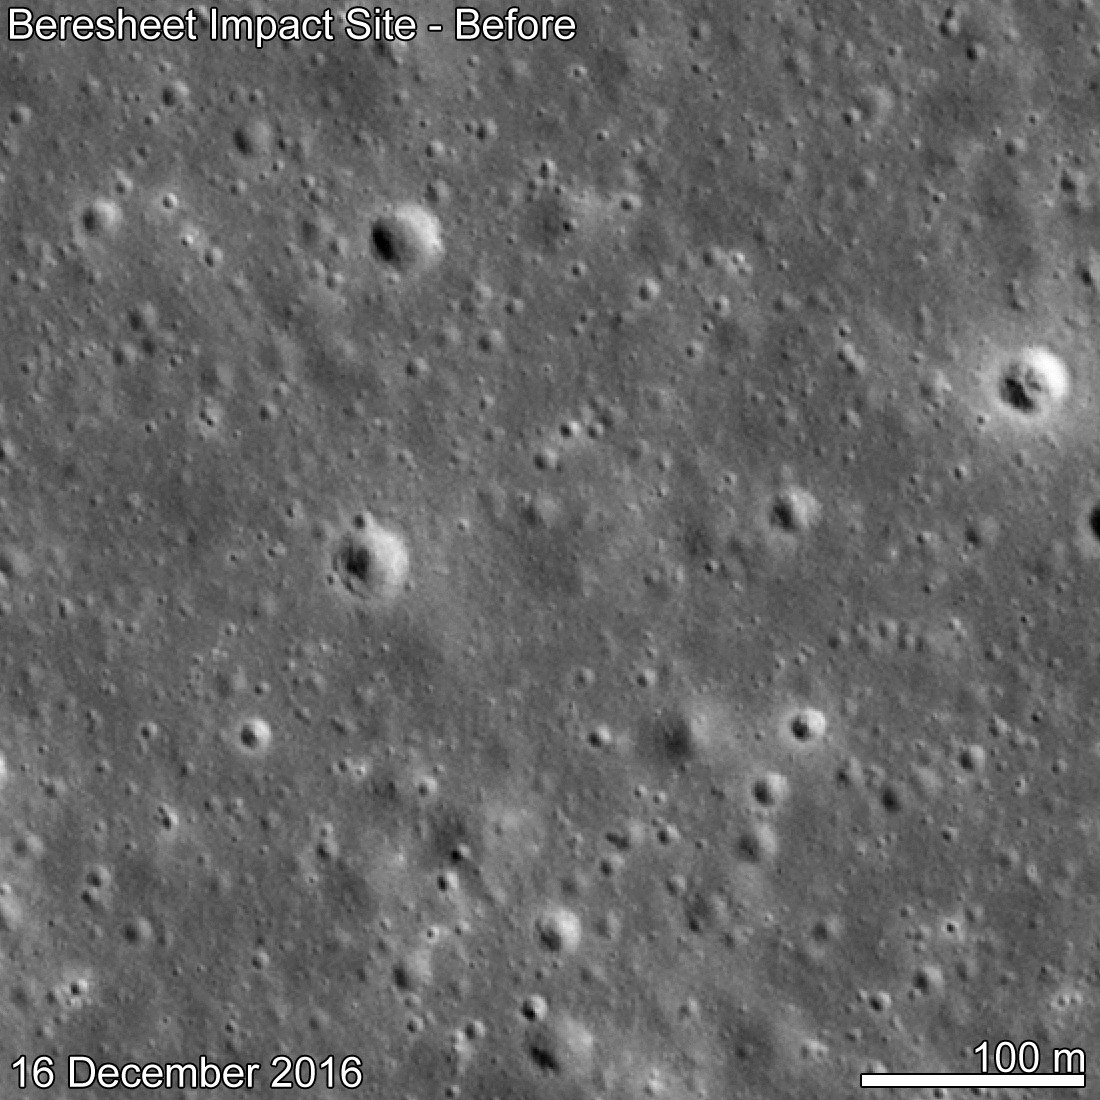 Місце падіння космічного апарату Beresheet, фото: NASA